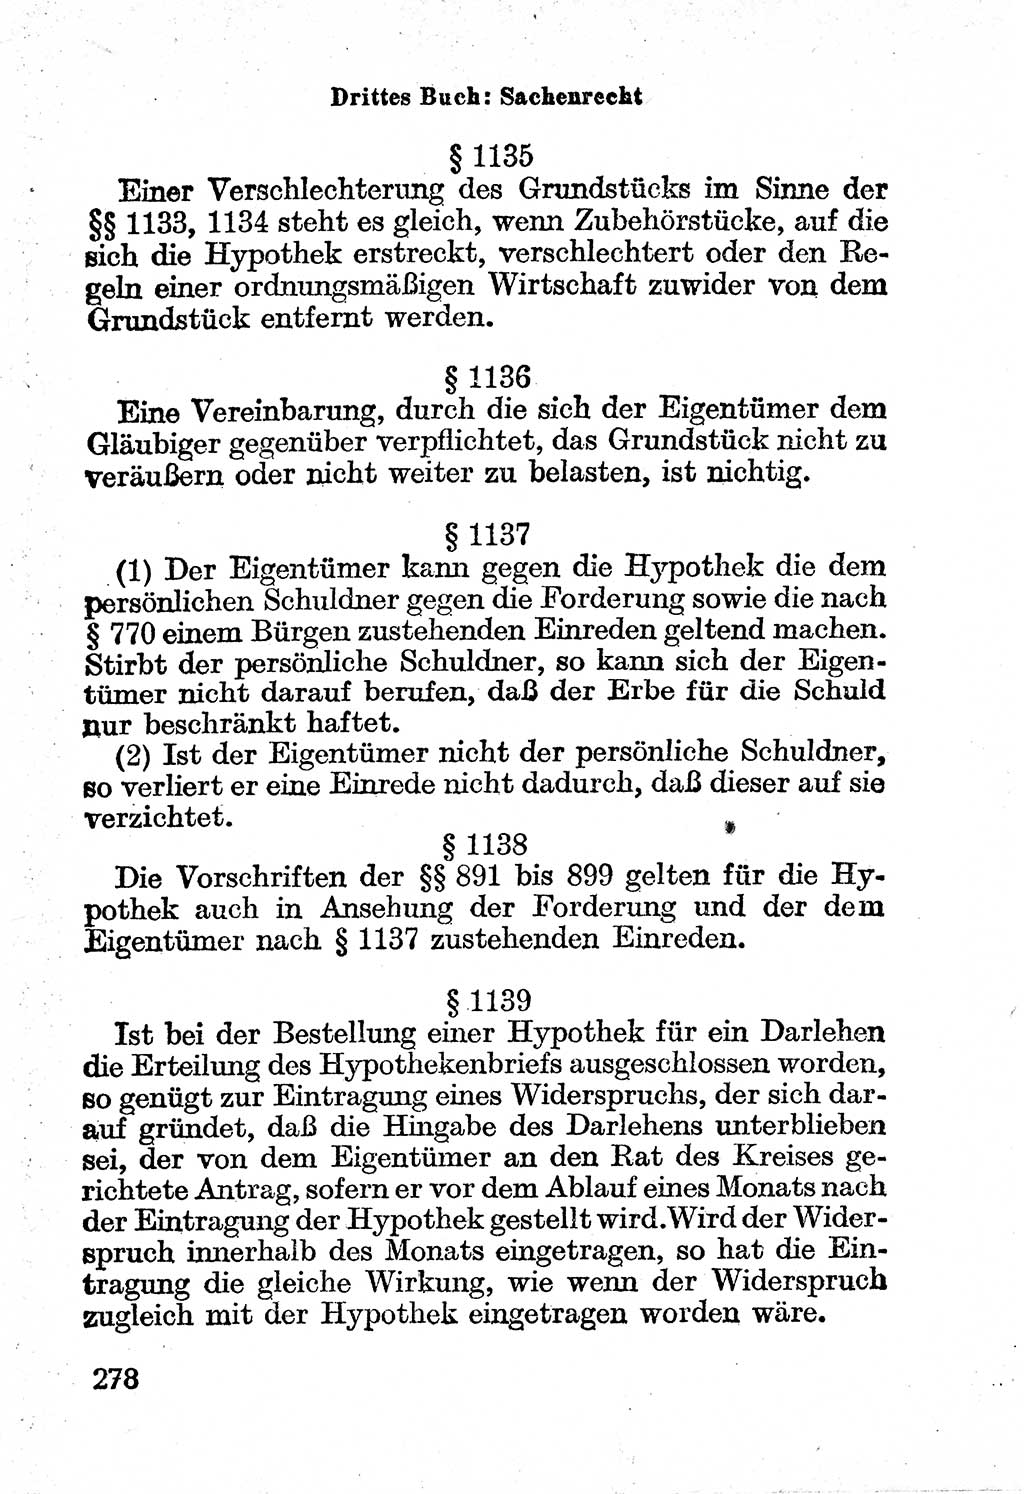 Bürgerliches Gesetzbuch (BGB) nebst wichtigen Nebengesetzen [Deutsche Demokratische Republik (DDR)] 1956, Seite 278 (BGB Nebenges. DDR 1956, S. 278)